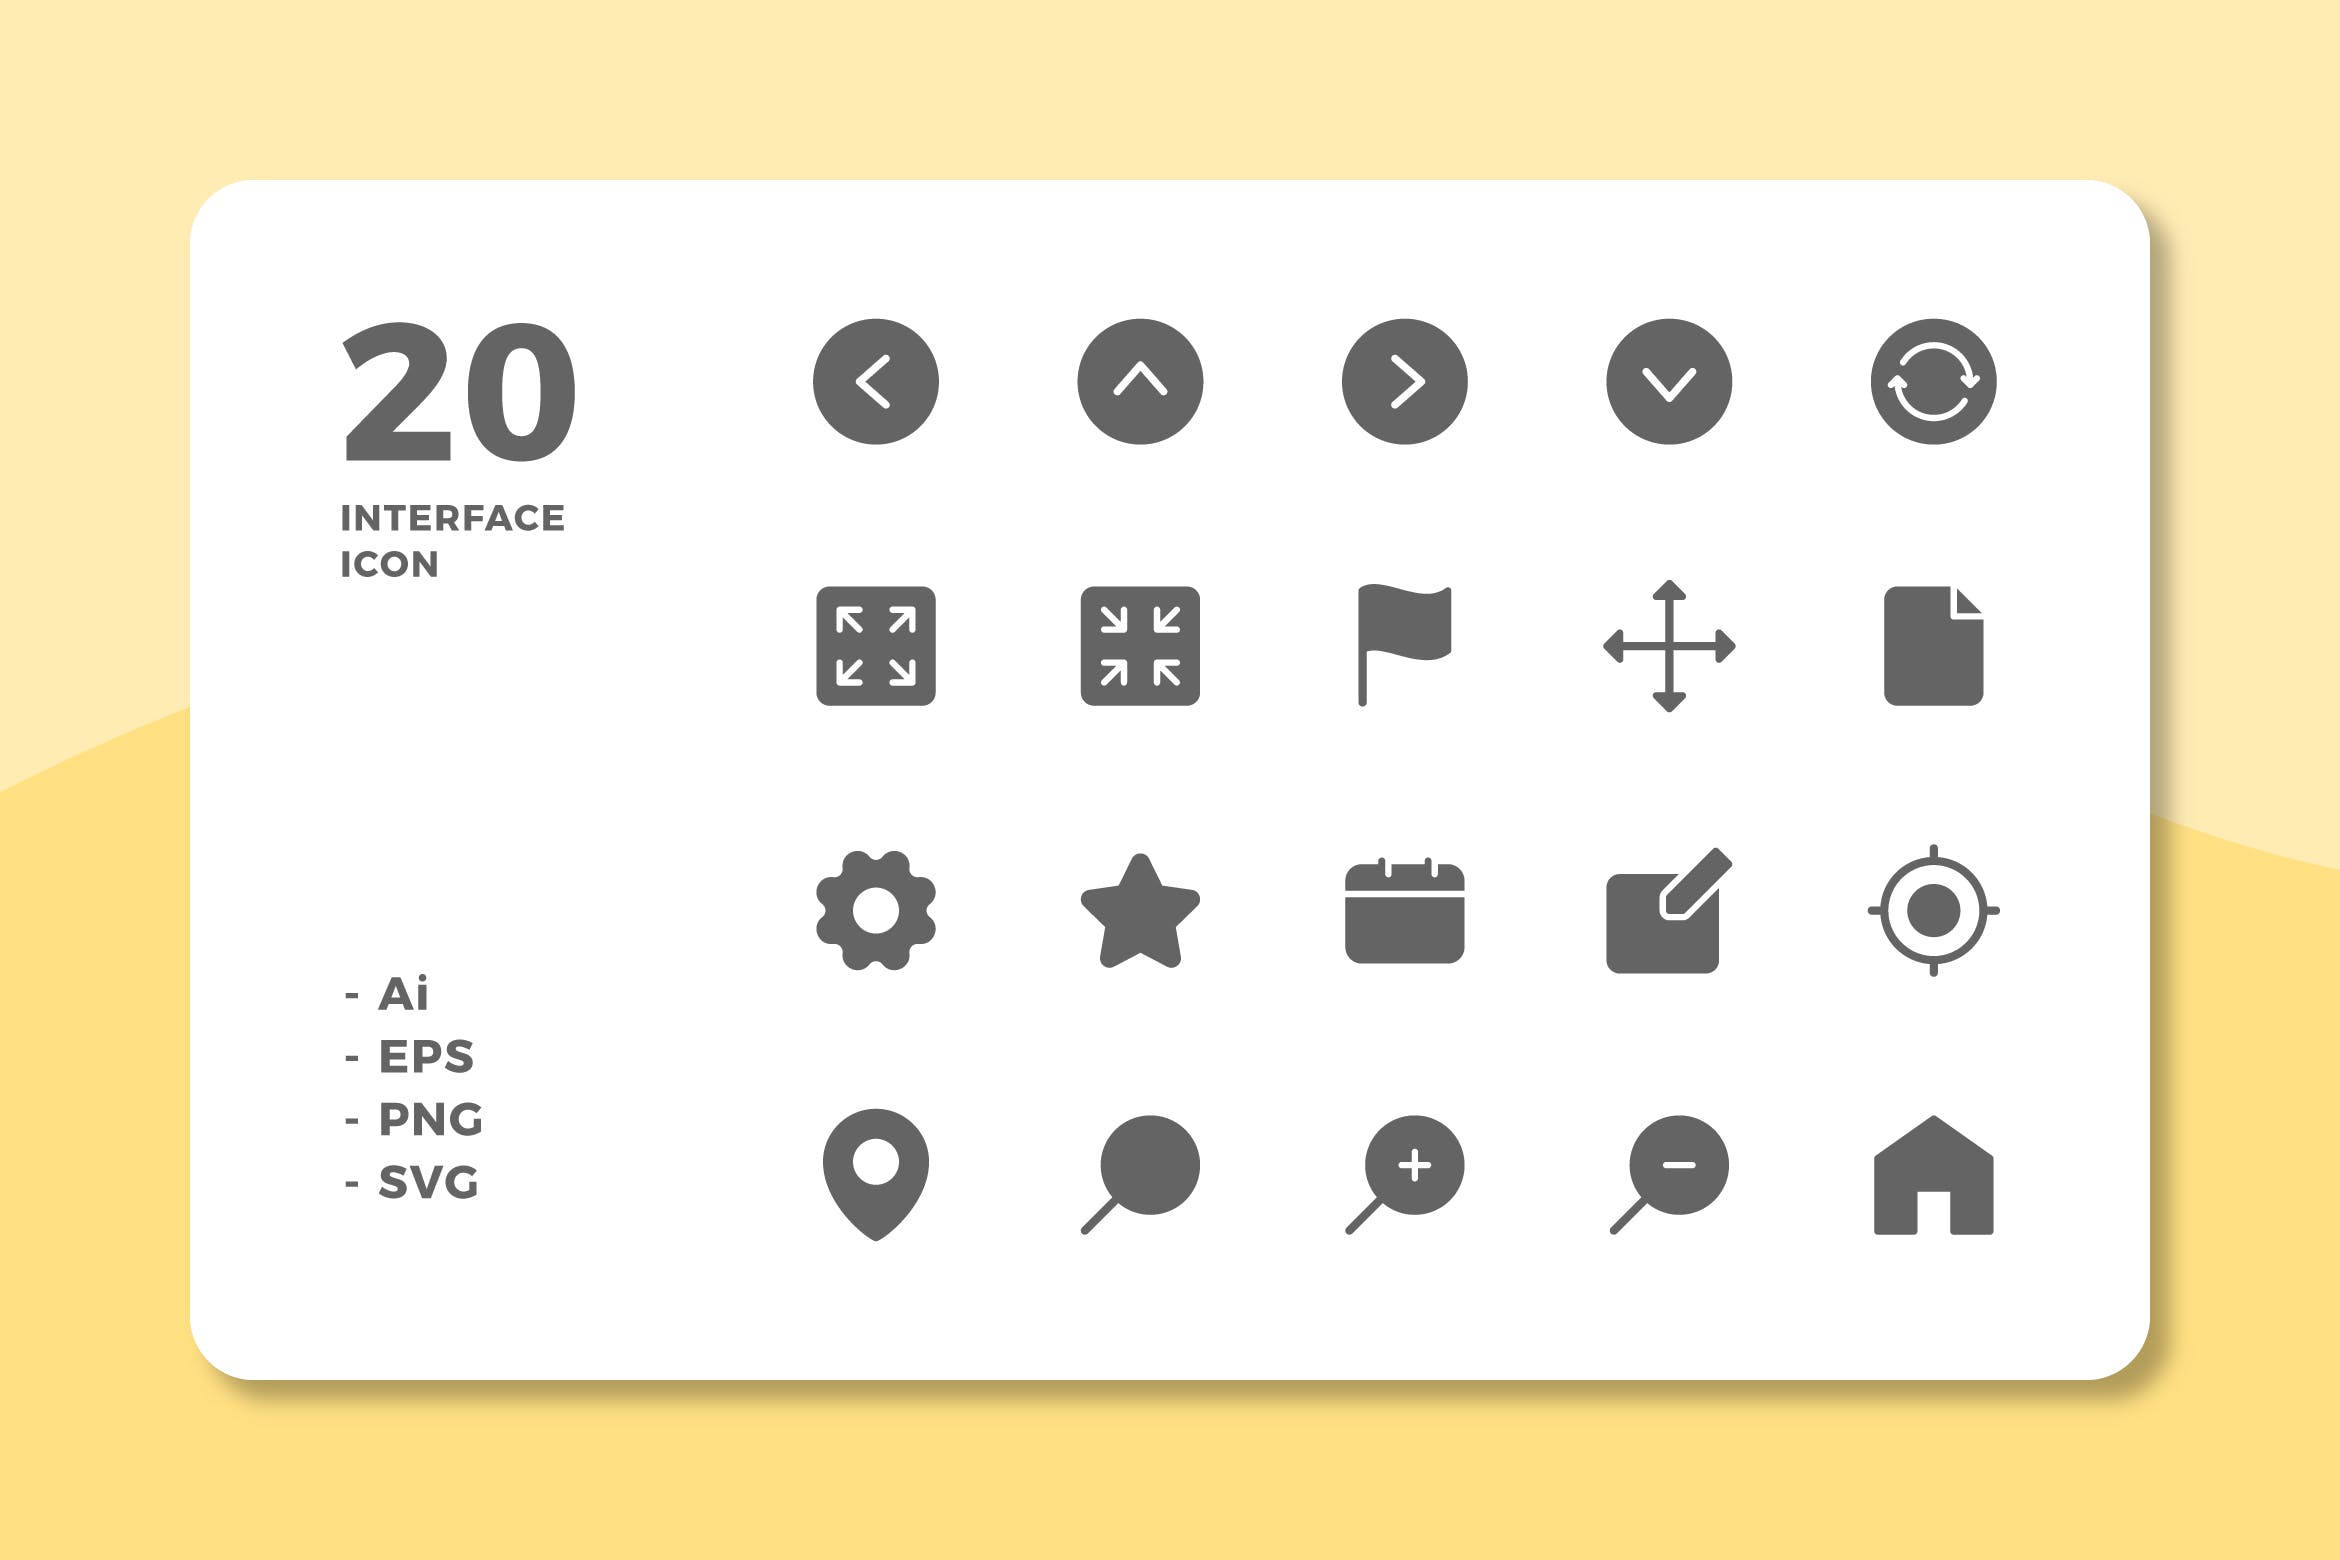 20枚UI界面设计APP操作选项第一素材精选图标v1 20 Interface Icons Vol.1 (Solid)插图